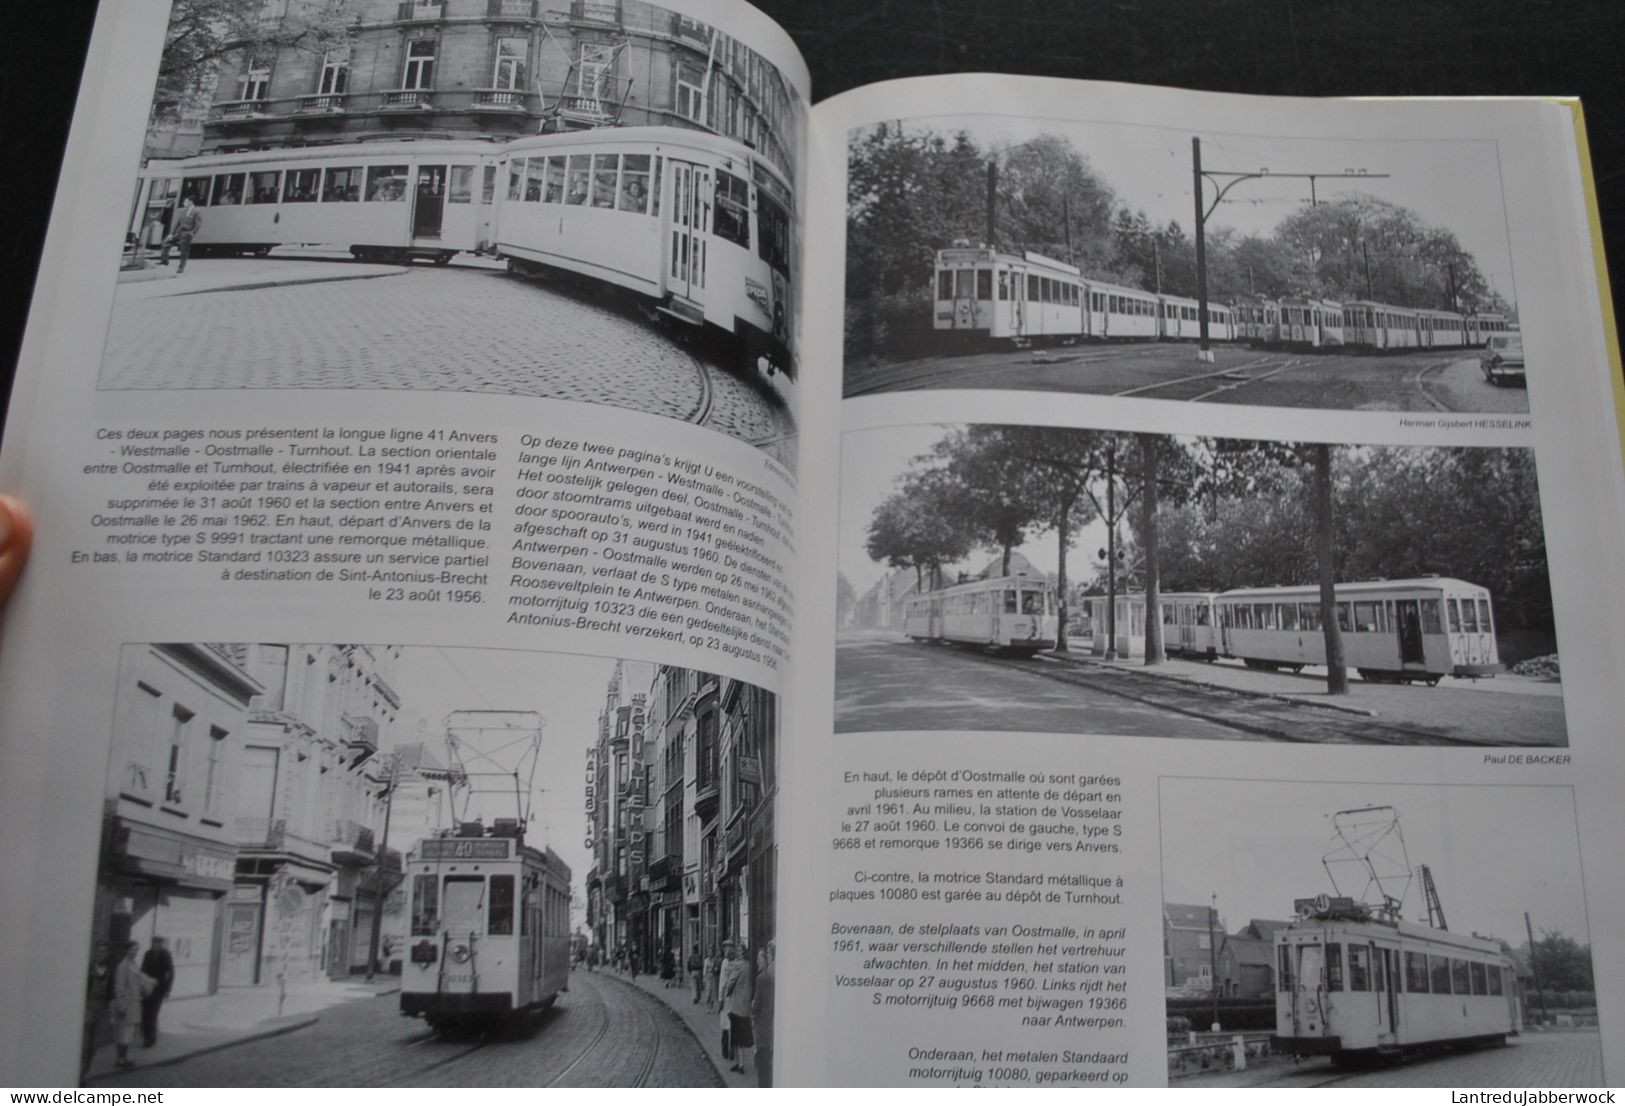 Balade vicinale en Belgique Tramreis door Belgie 1950 1975 Editions du Cabri Collection Images ferroviaires NMVB SNCV